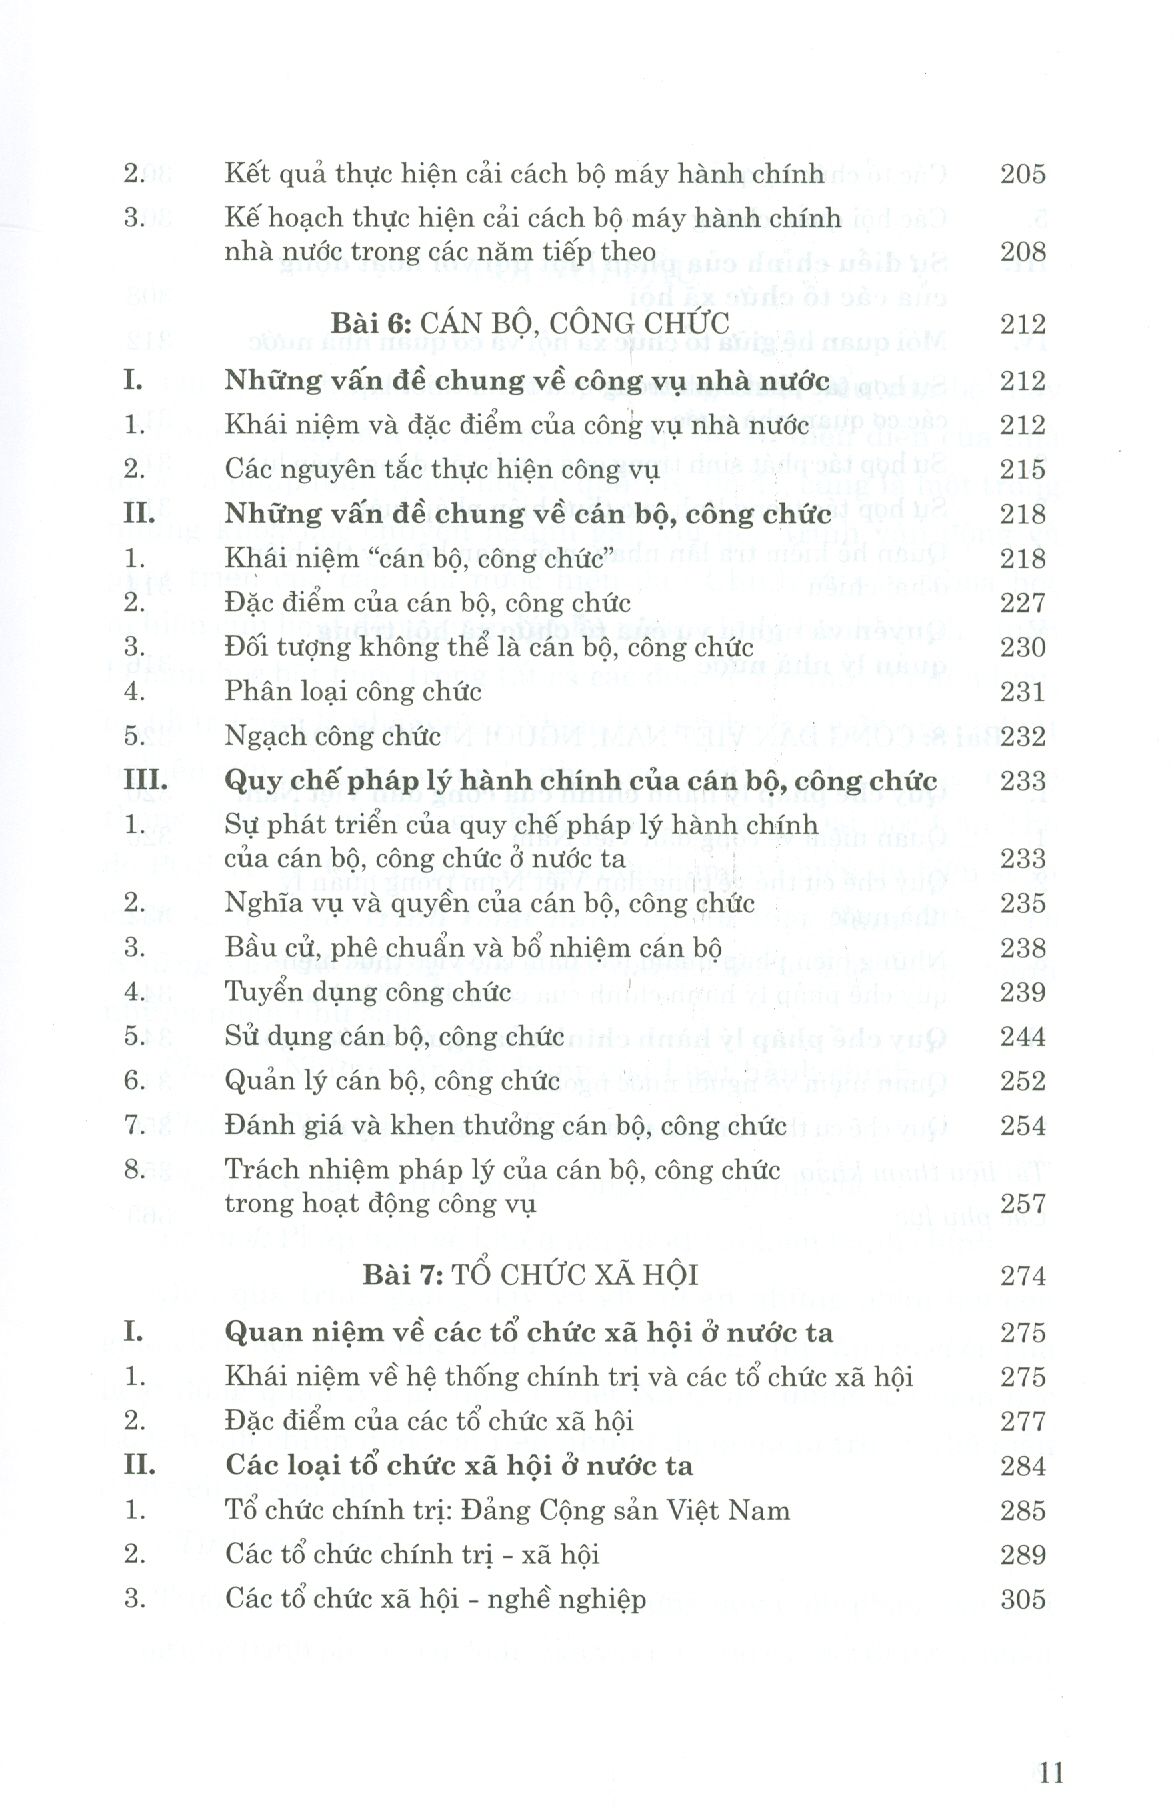 Giáo Trình Luật Hành Chính Việt Nam (Phần 1) - Những Vấn Đề Chung Của Luật Hành Chính (Xuất bản lần thứ hai)